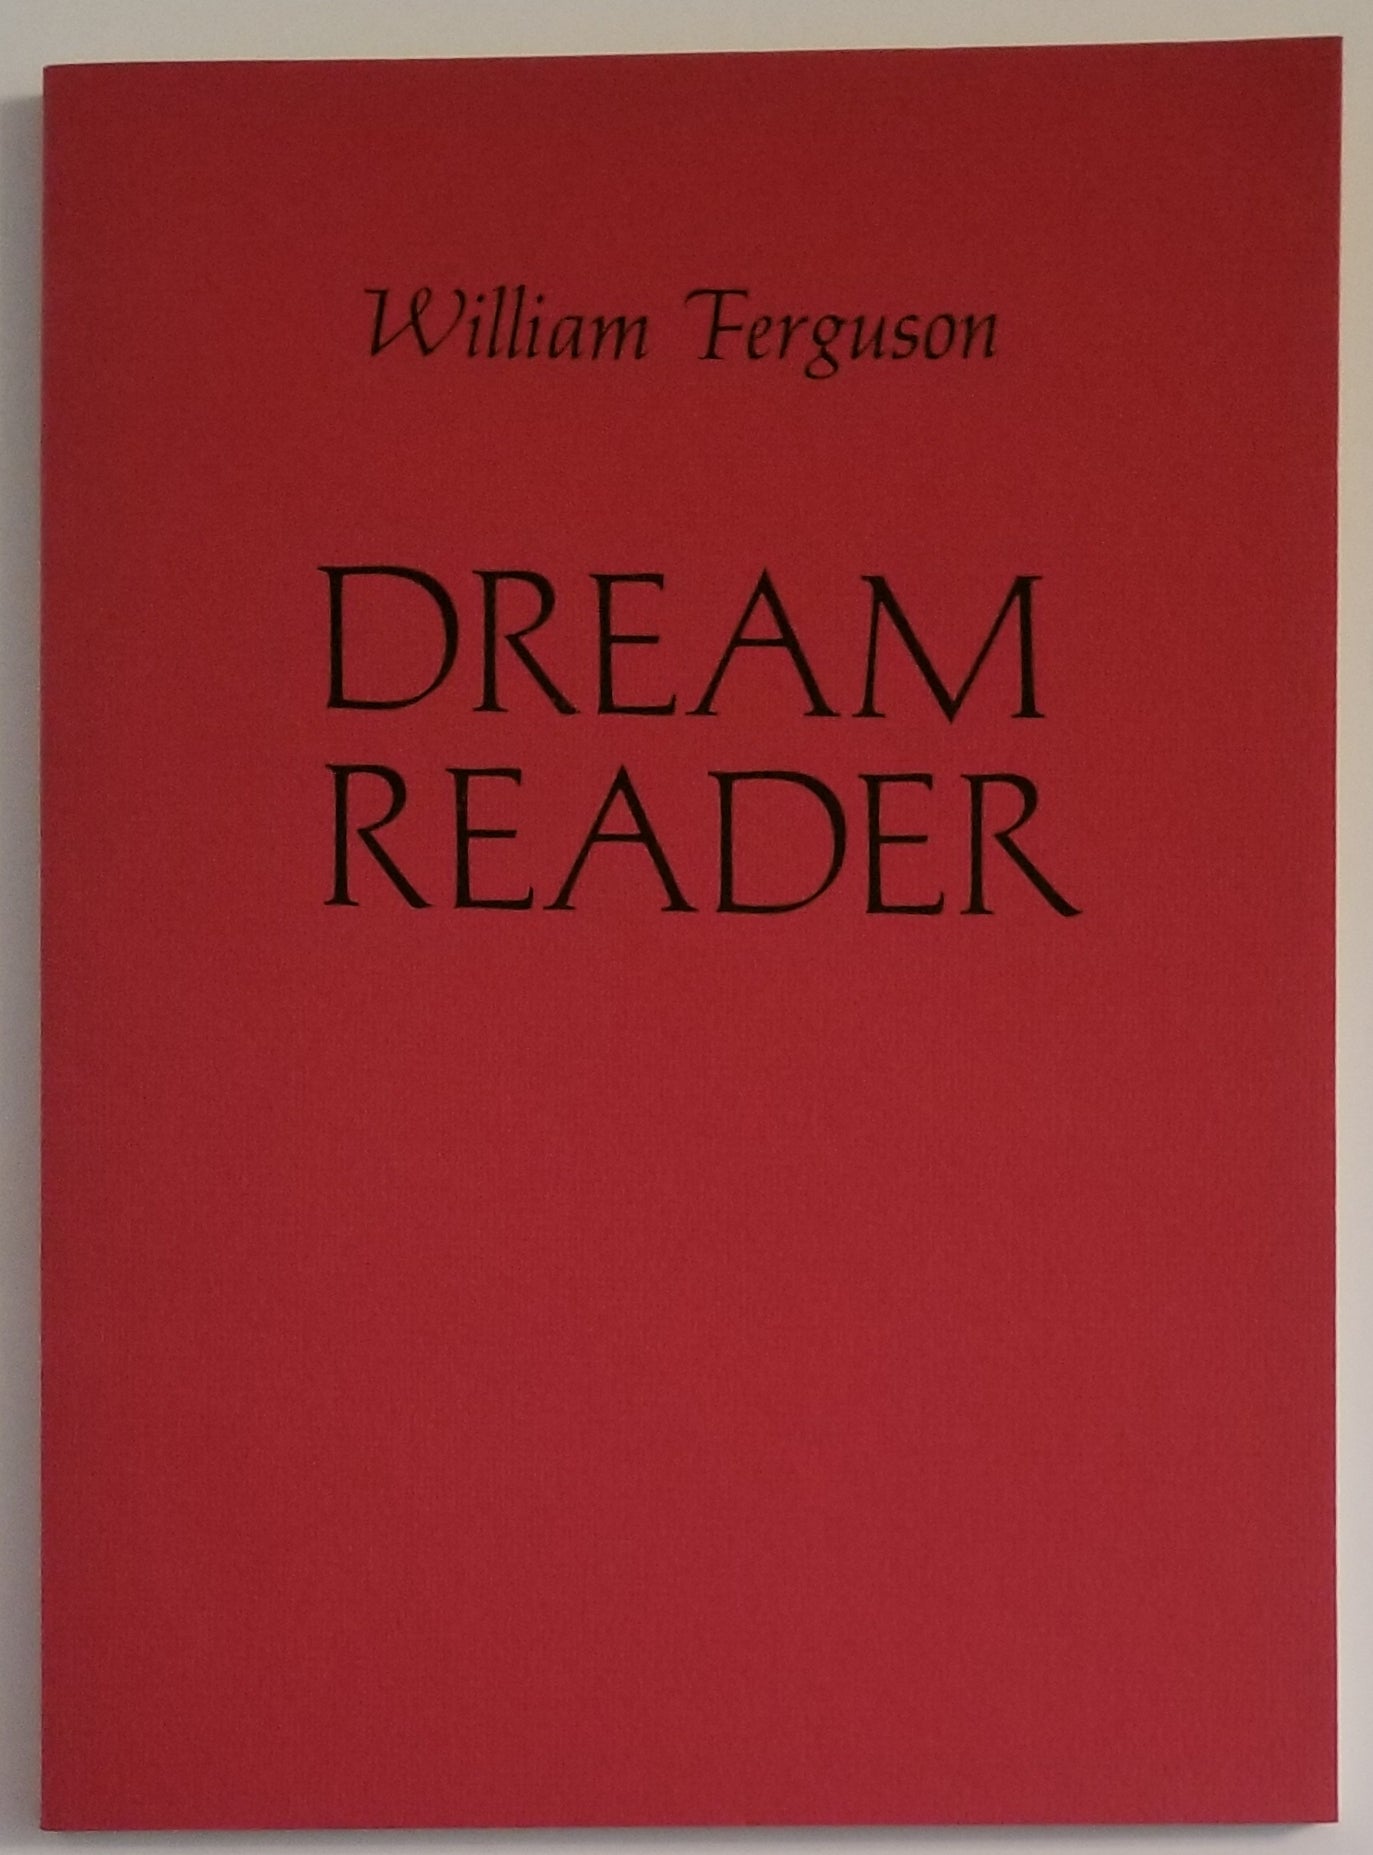 [Book #4076] DREAM READER. William Ferguson.